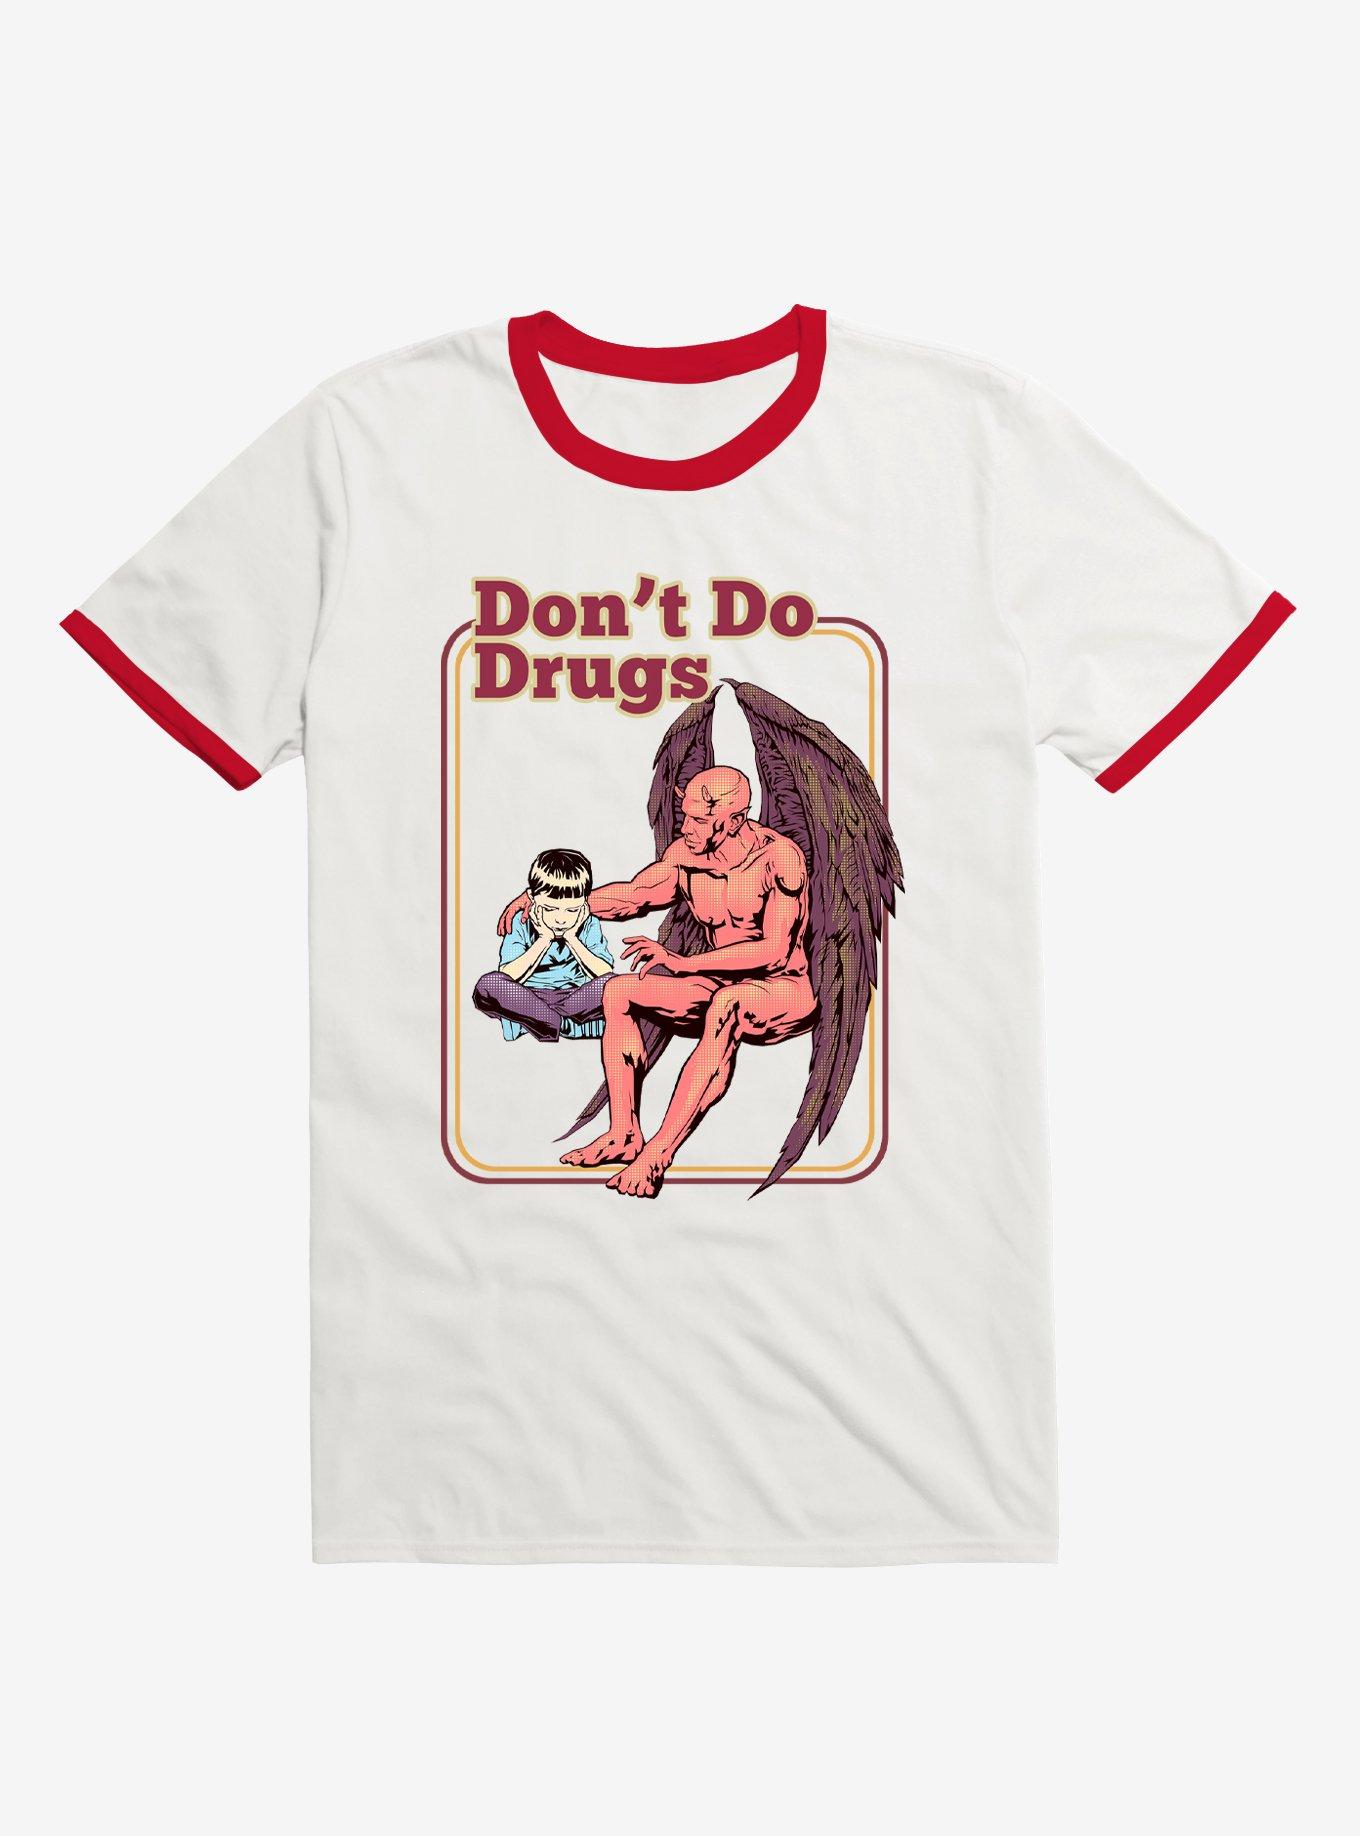 Drug Free T-shirt, TMNT Tees